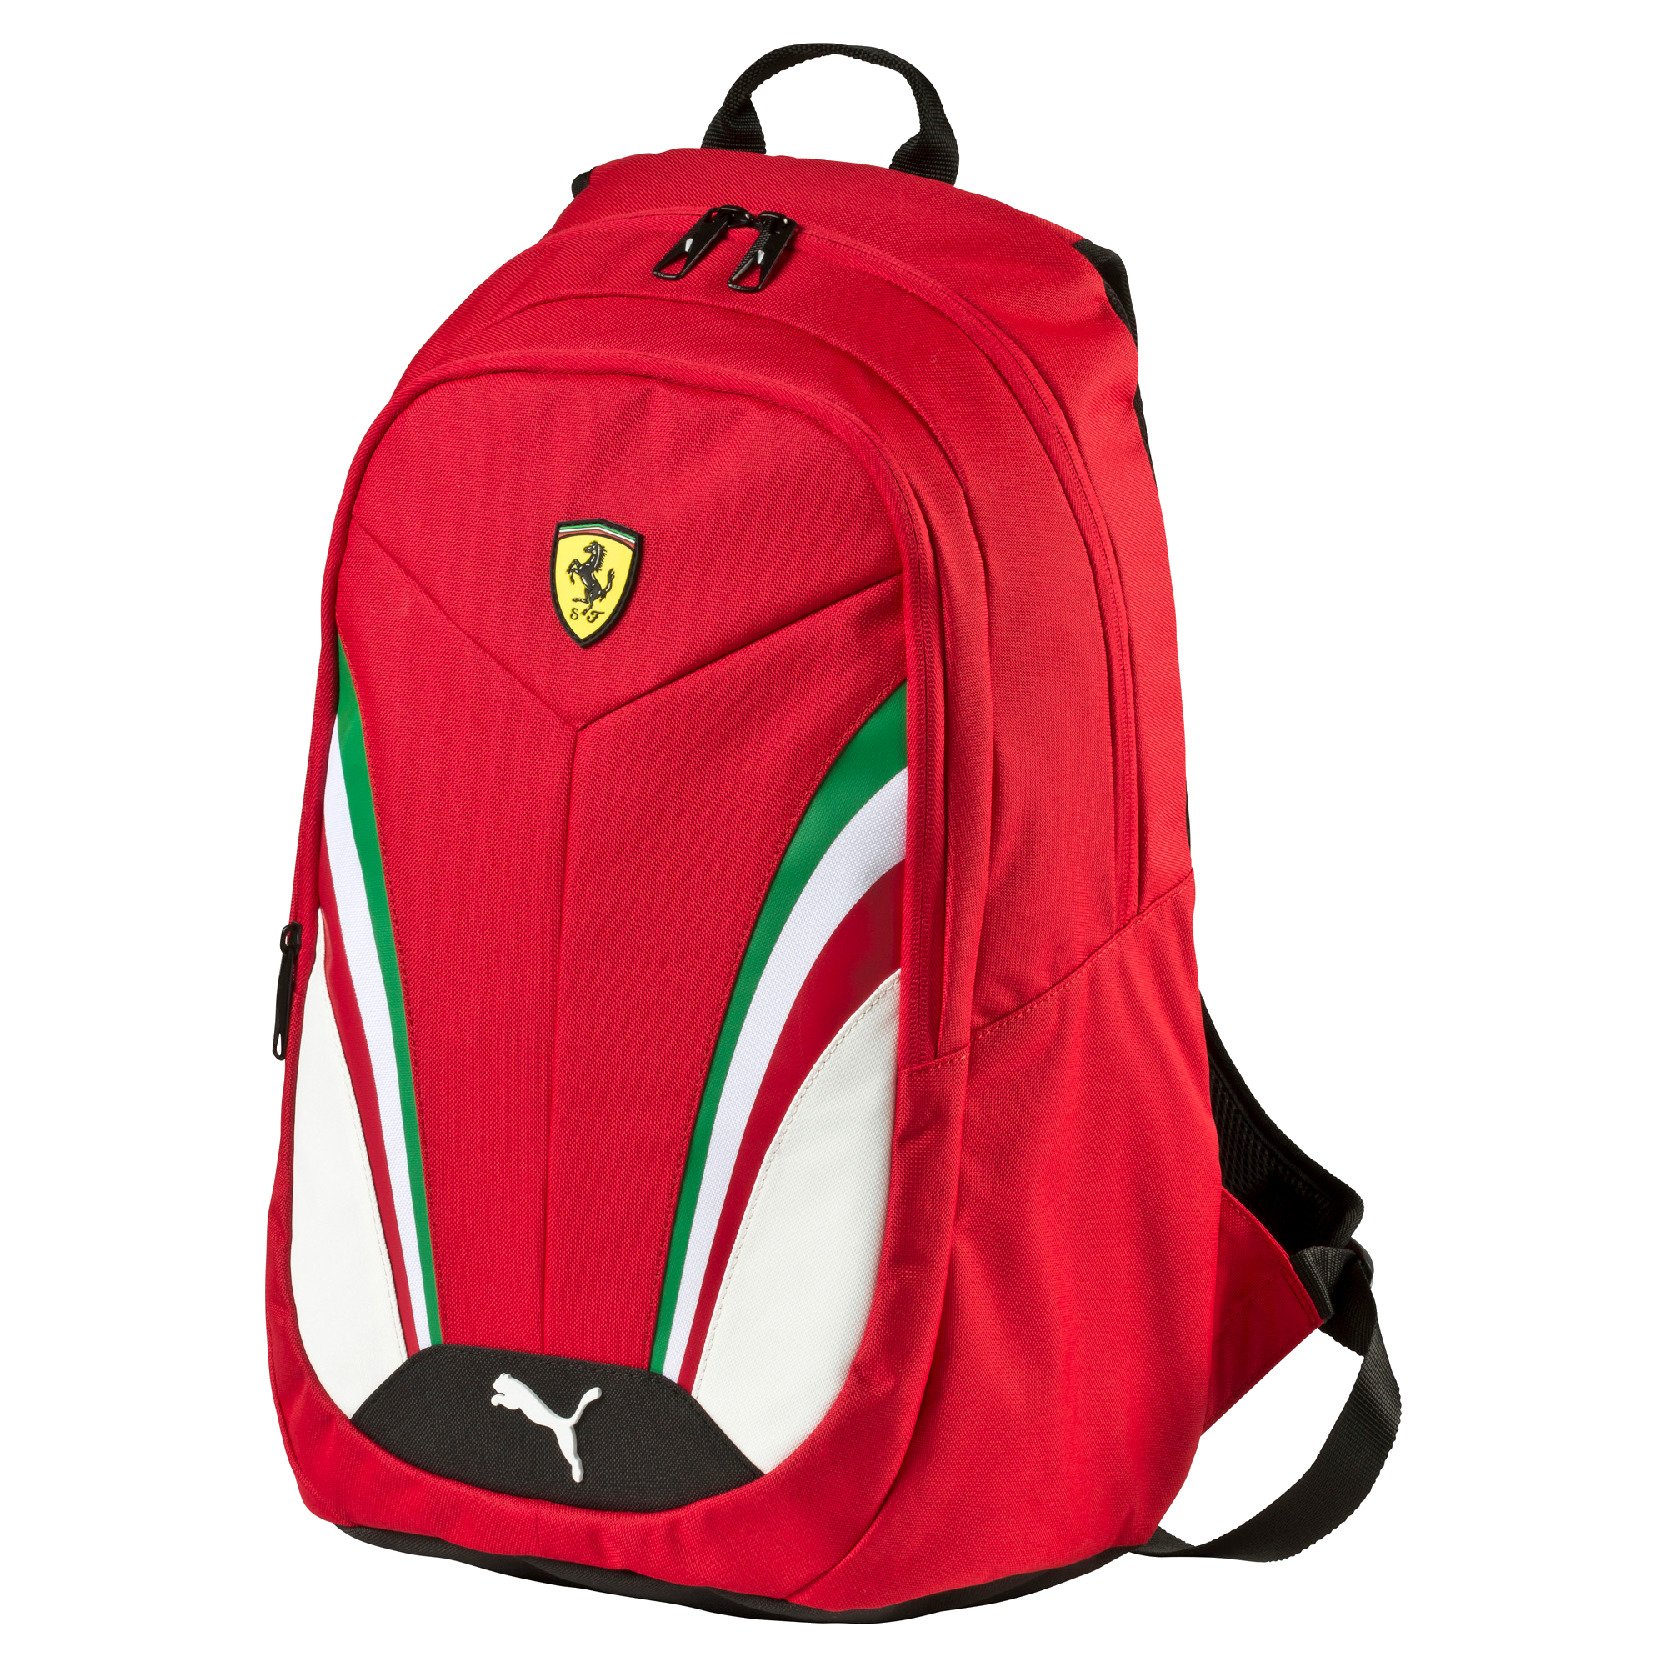 Plecak Scuderia Ferrari Backpack - replika 2016 CZERWONY | FERRARI ...